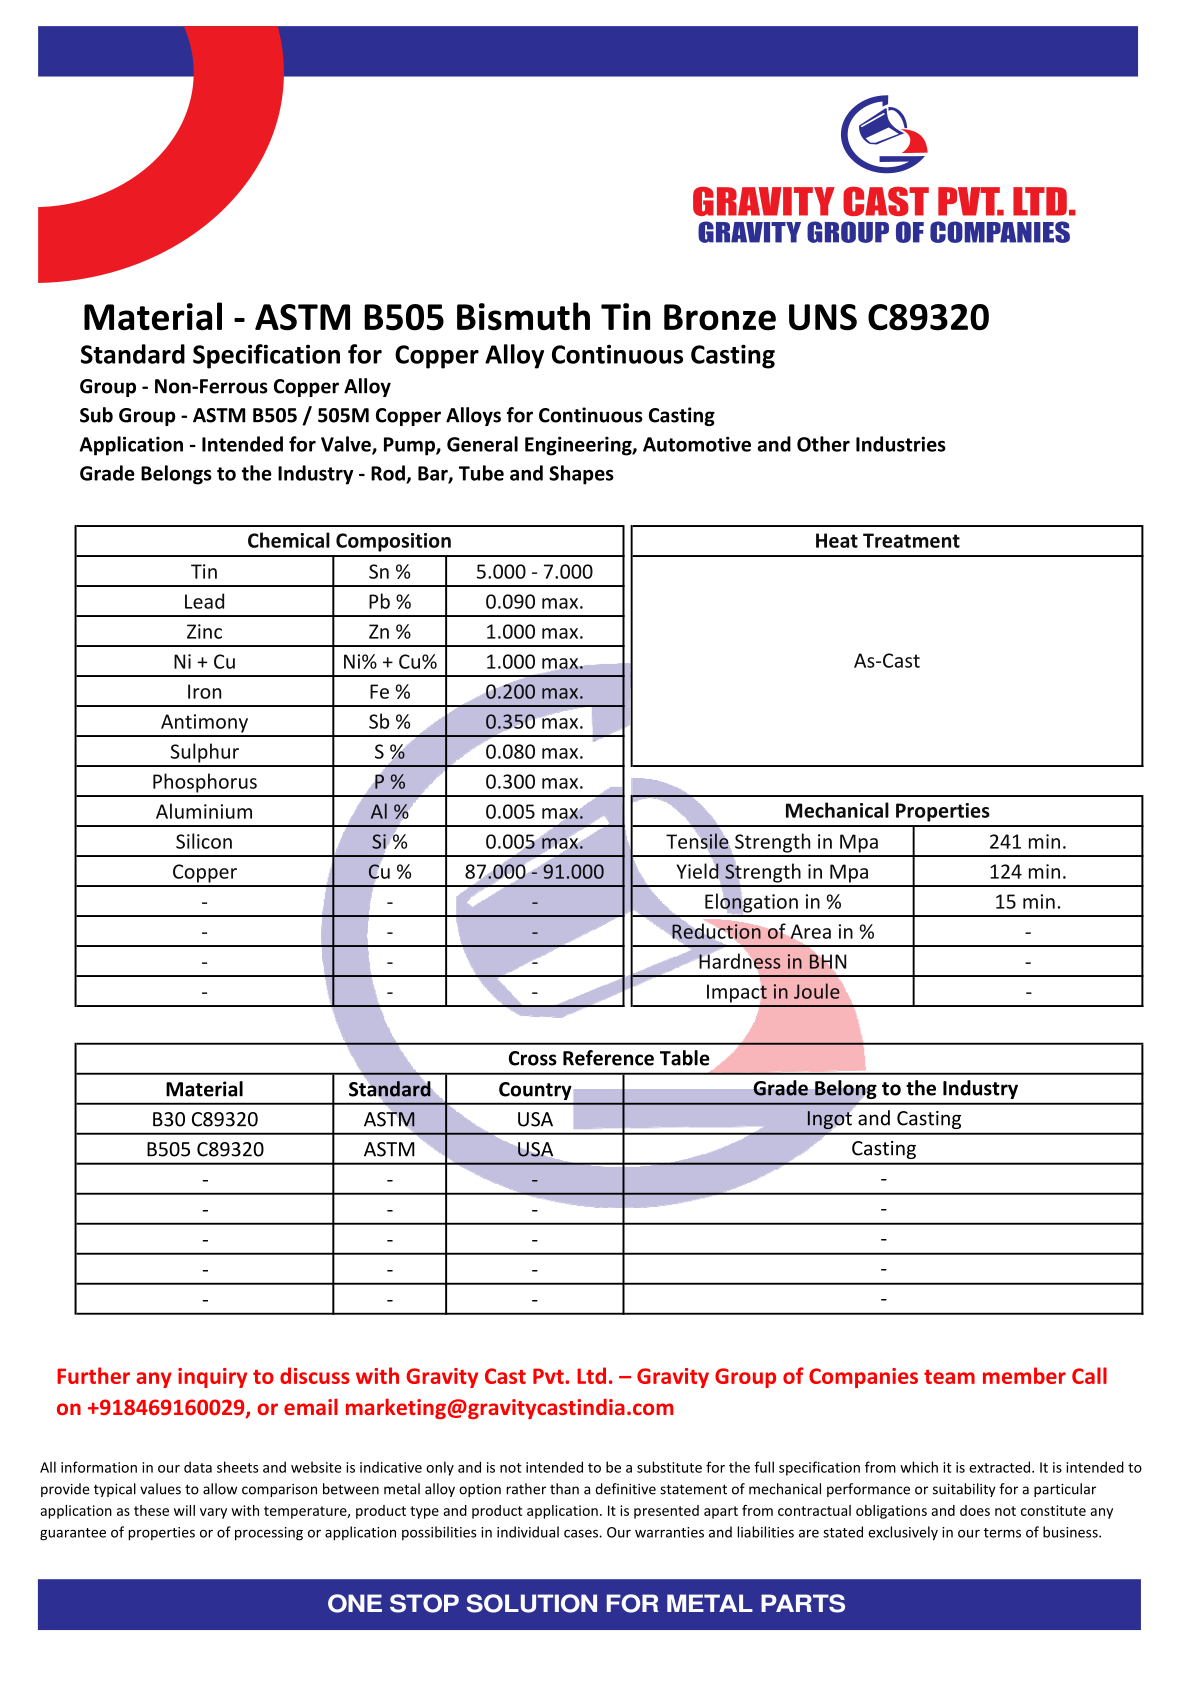 ASTM B505 Bismuth Tin Bronze UNS C89320.pdf